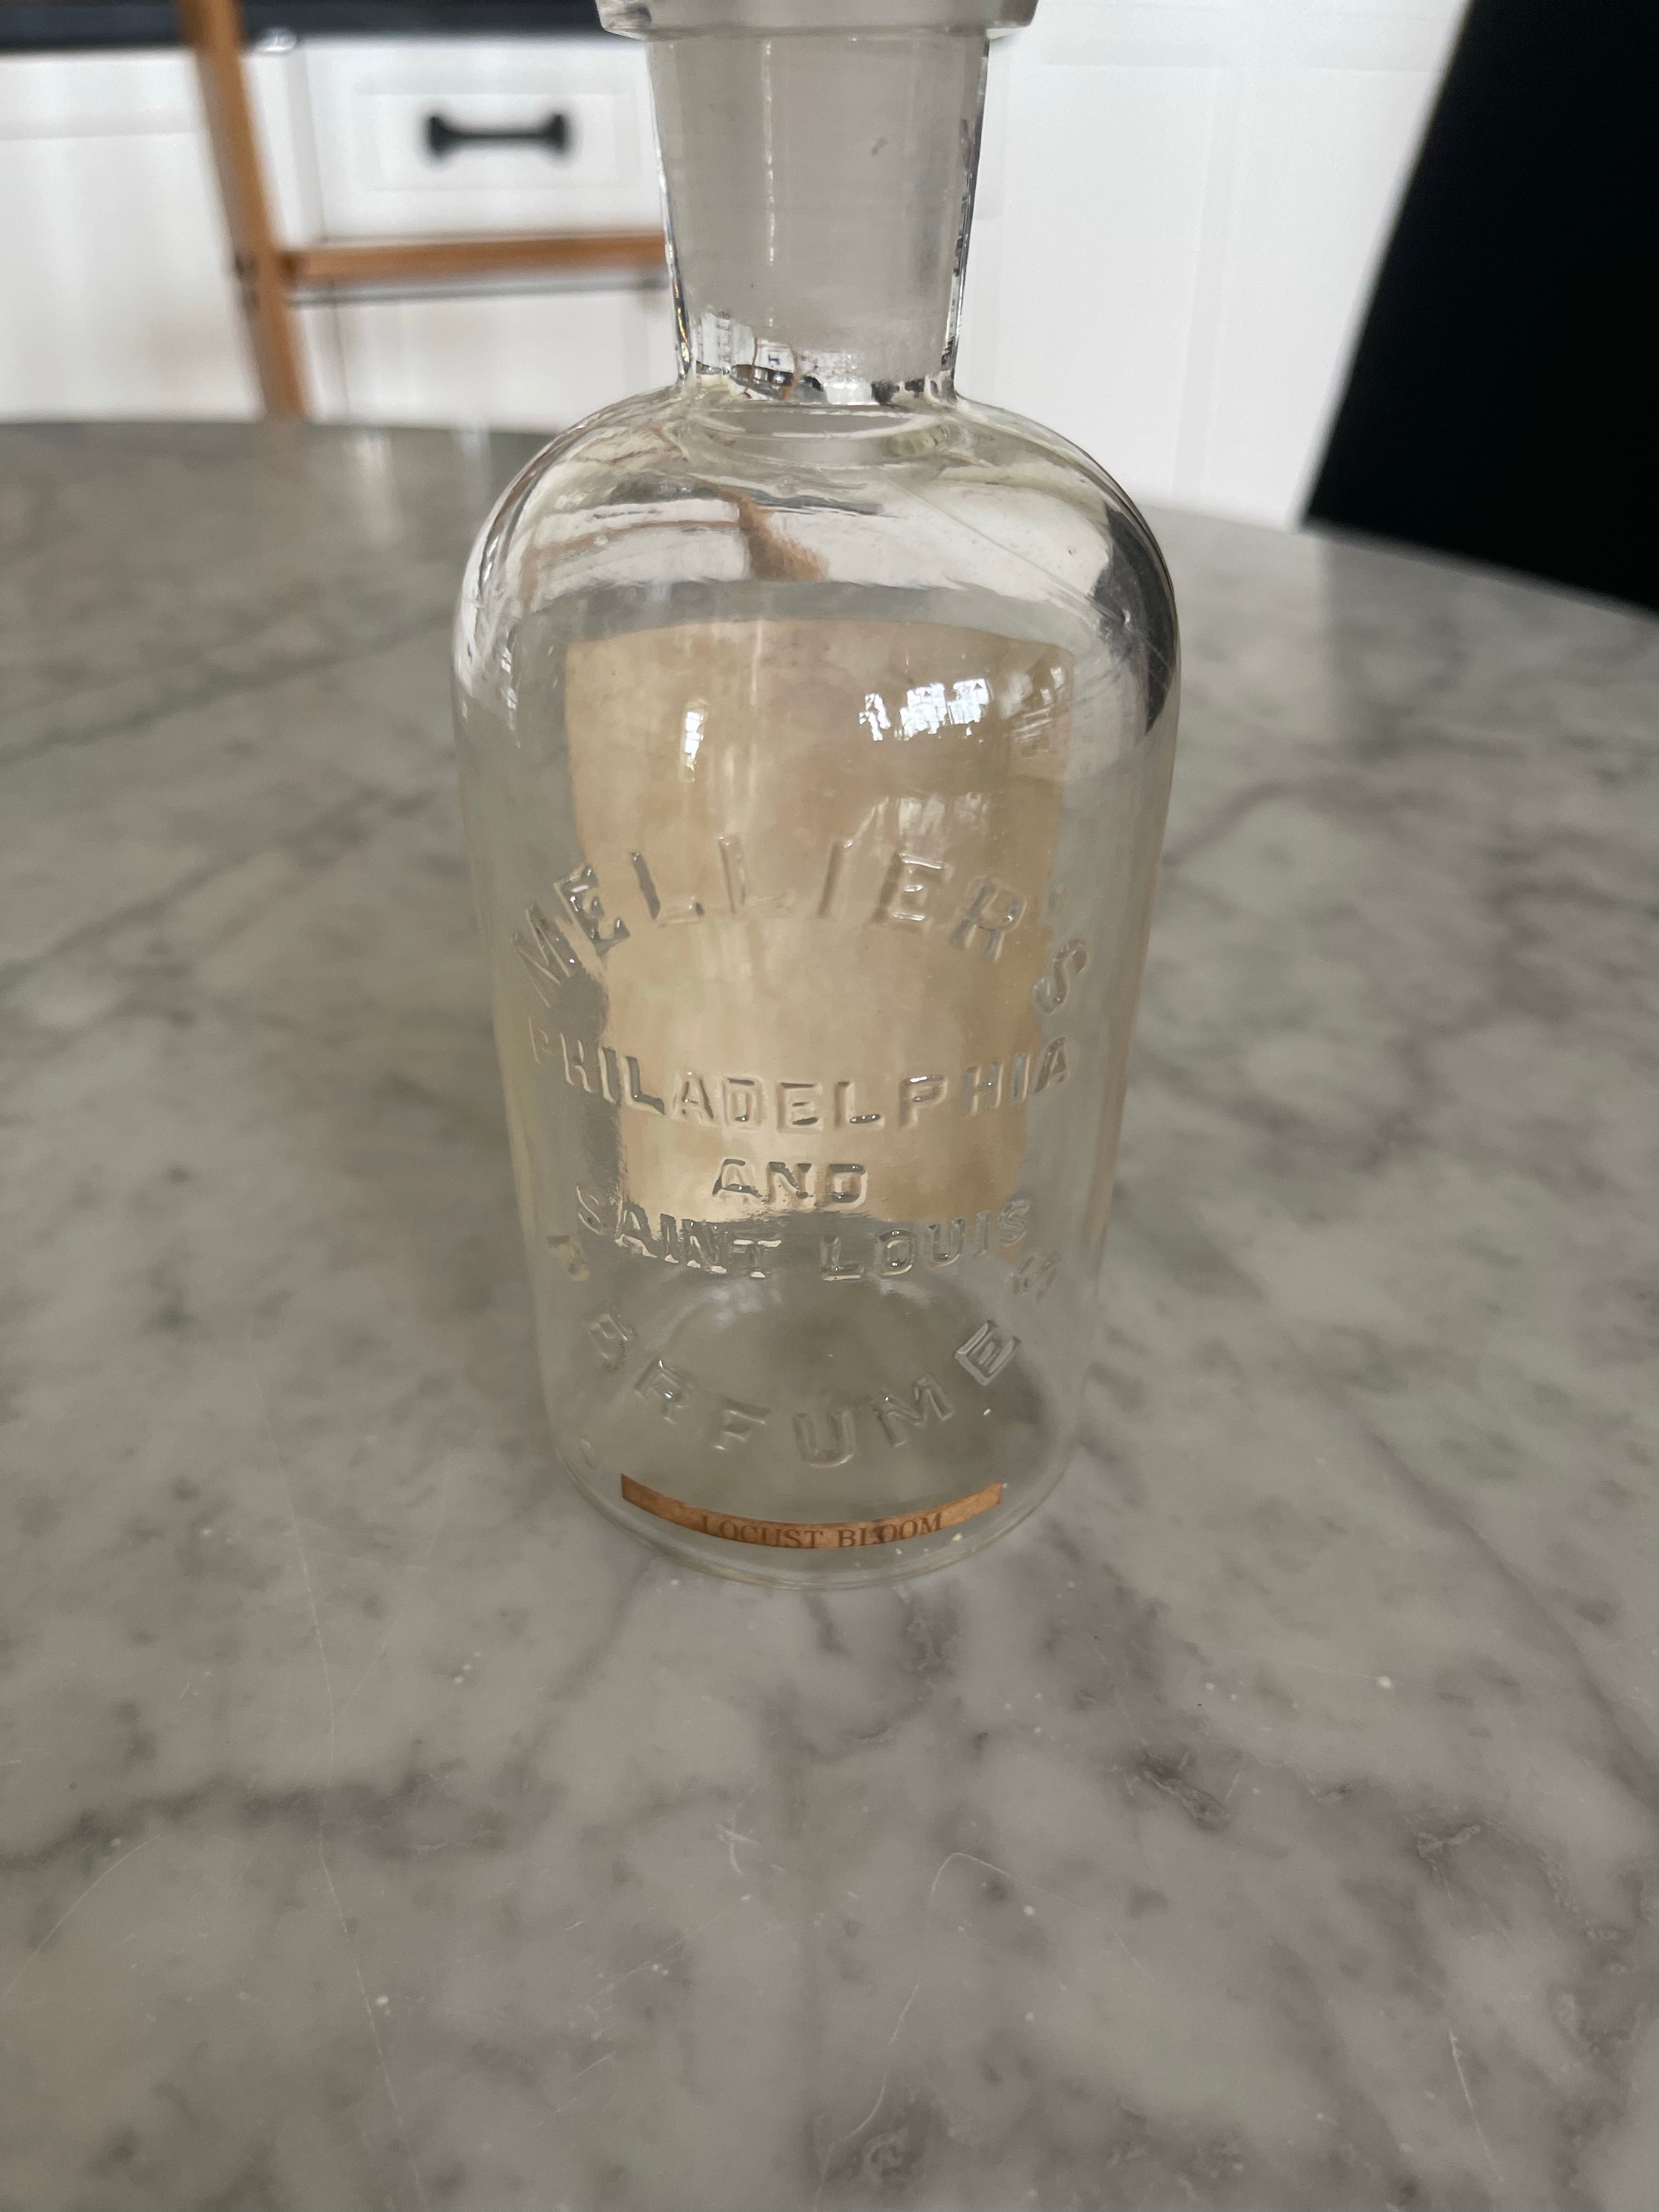 Vintage Perfume Bottle from Mellier Philadelphia & St Louis